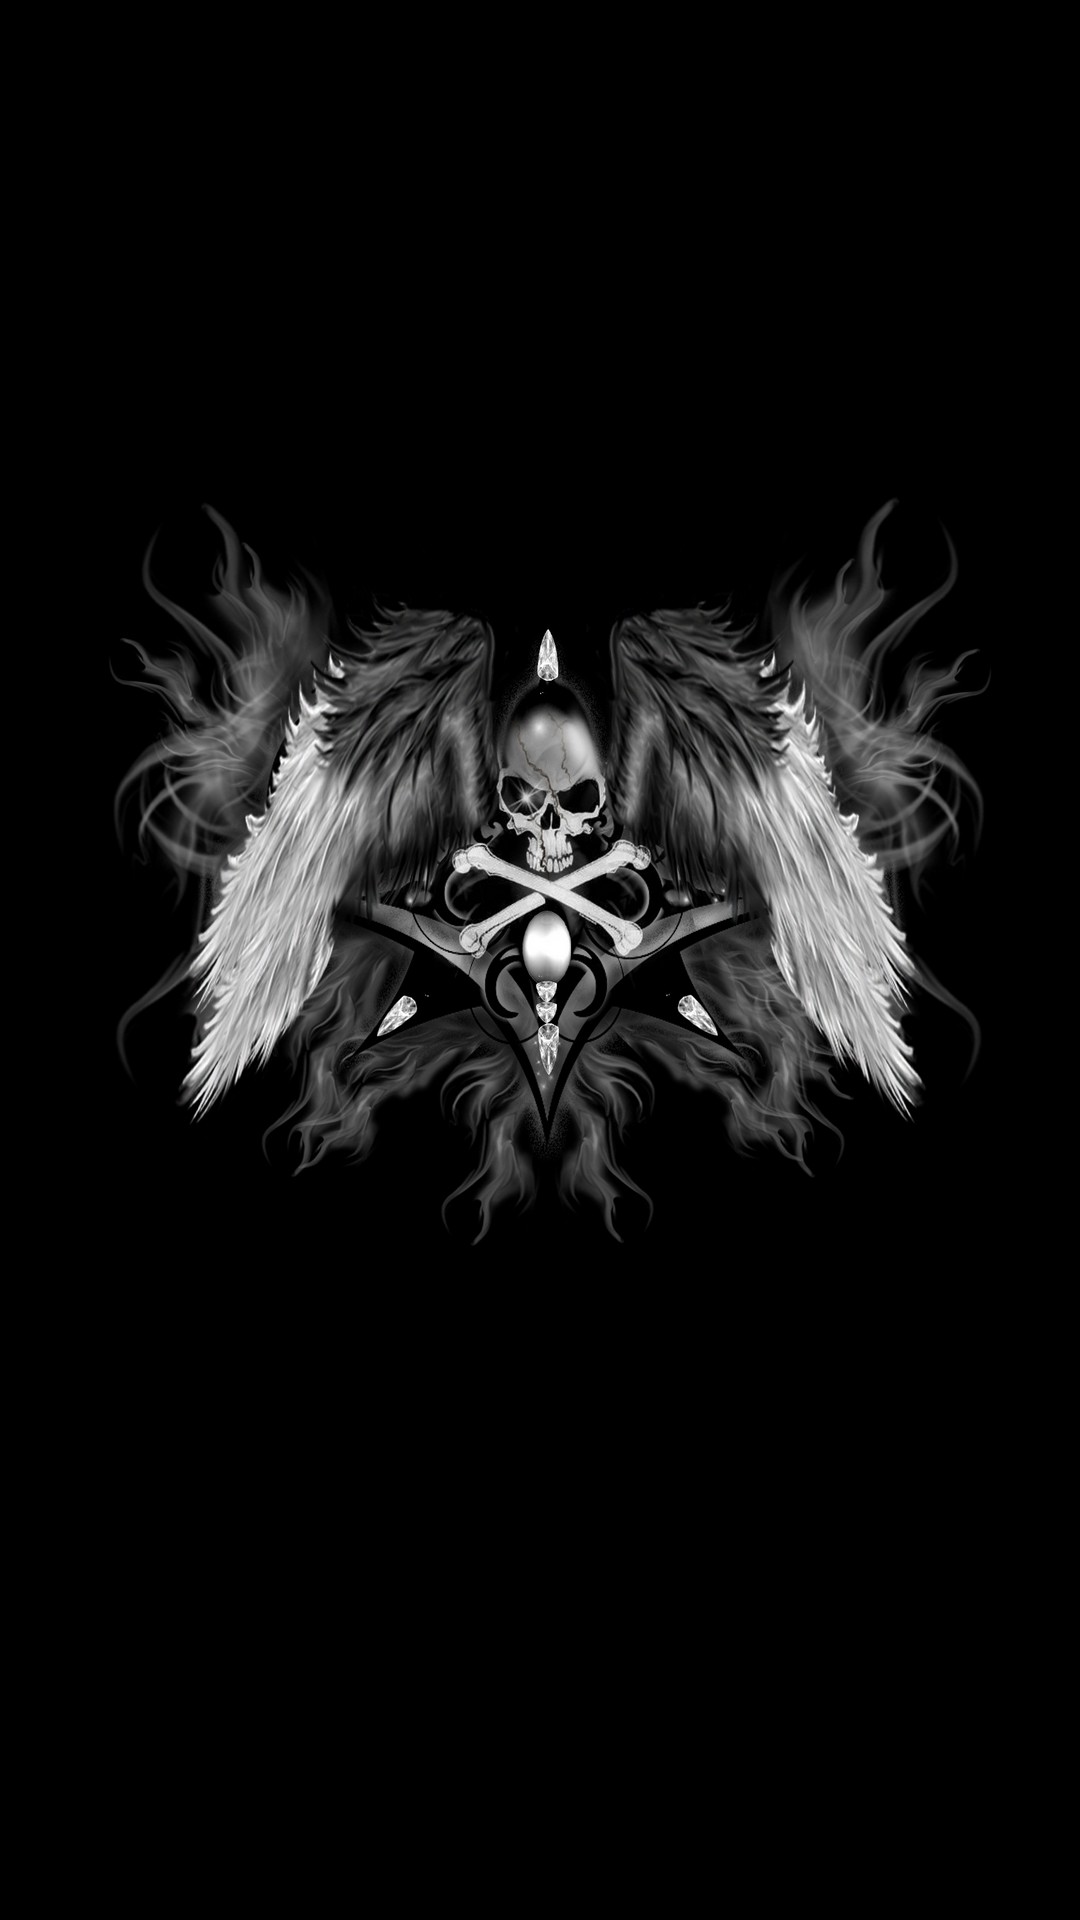 Dark Skull Wings iPhone Wallpaper resolution 1080x1920